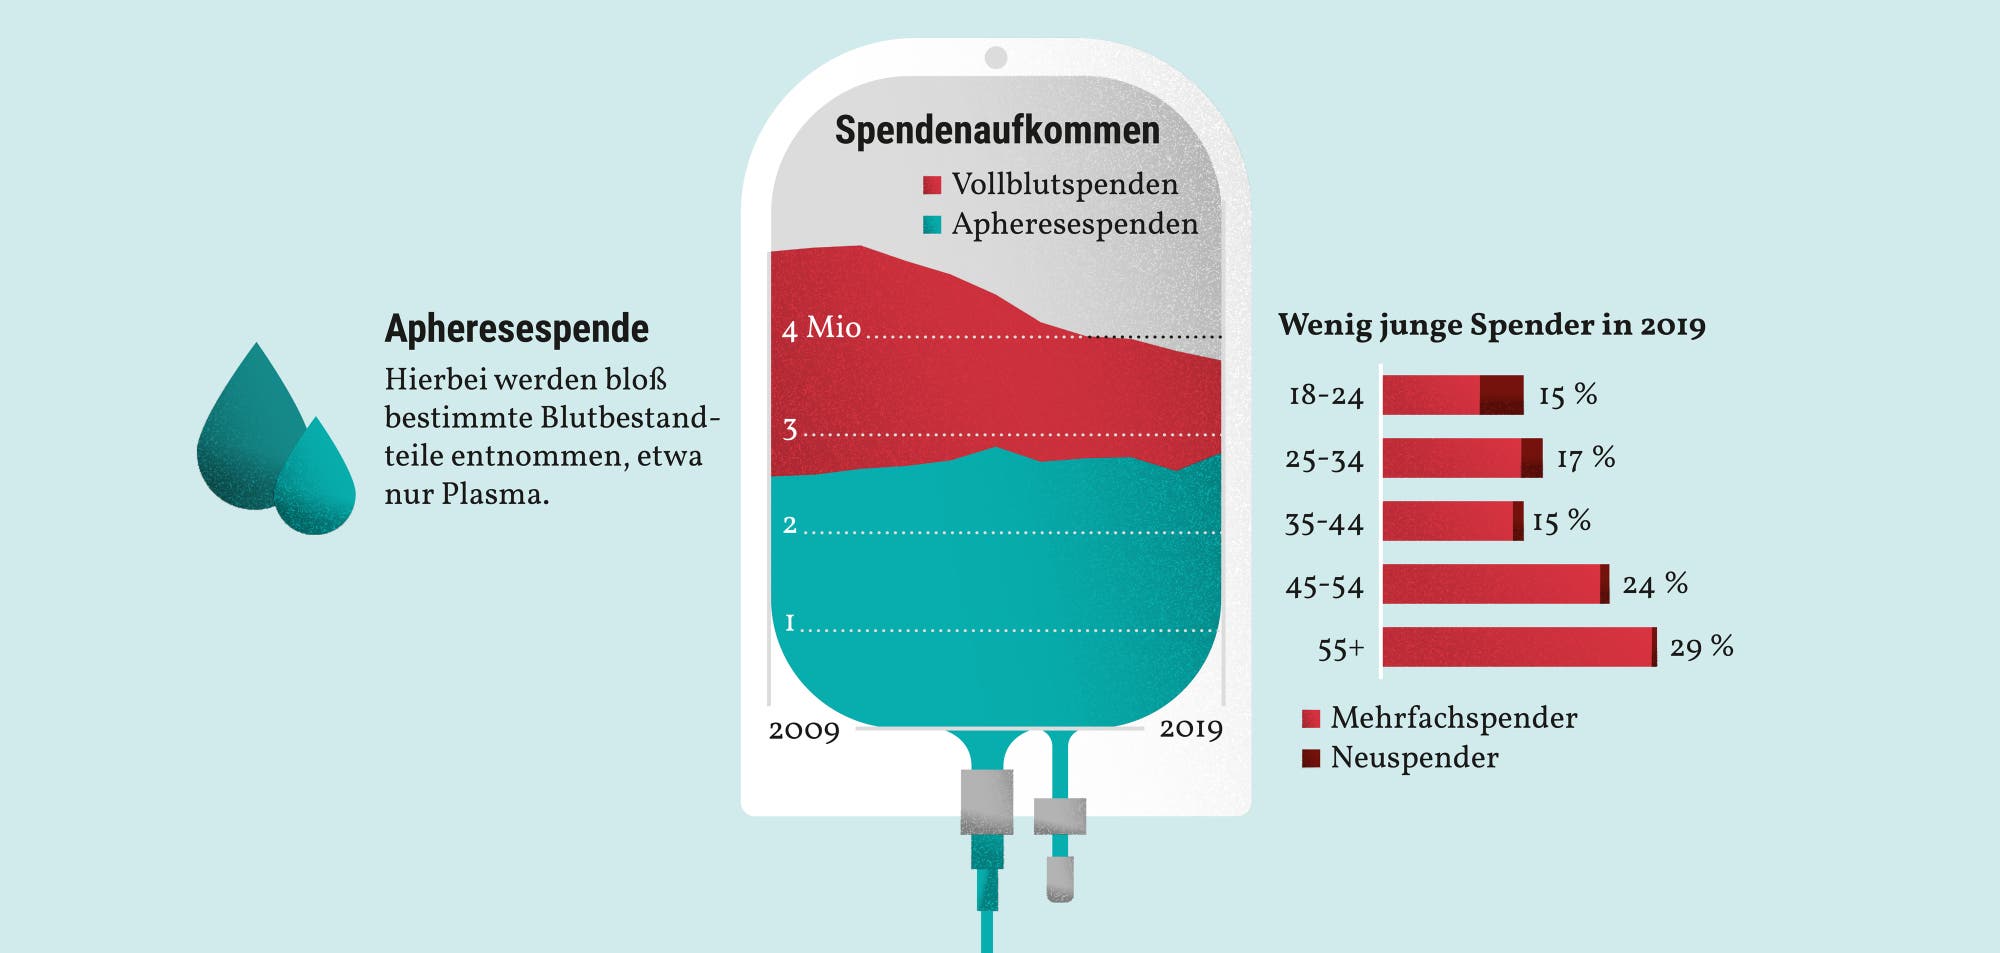 Im Jahr 2019 gab es wenig junge Blutspenderinen und -Spender in Deutschland, wie die Grafik zeigt.